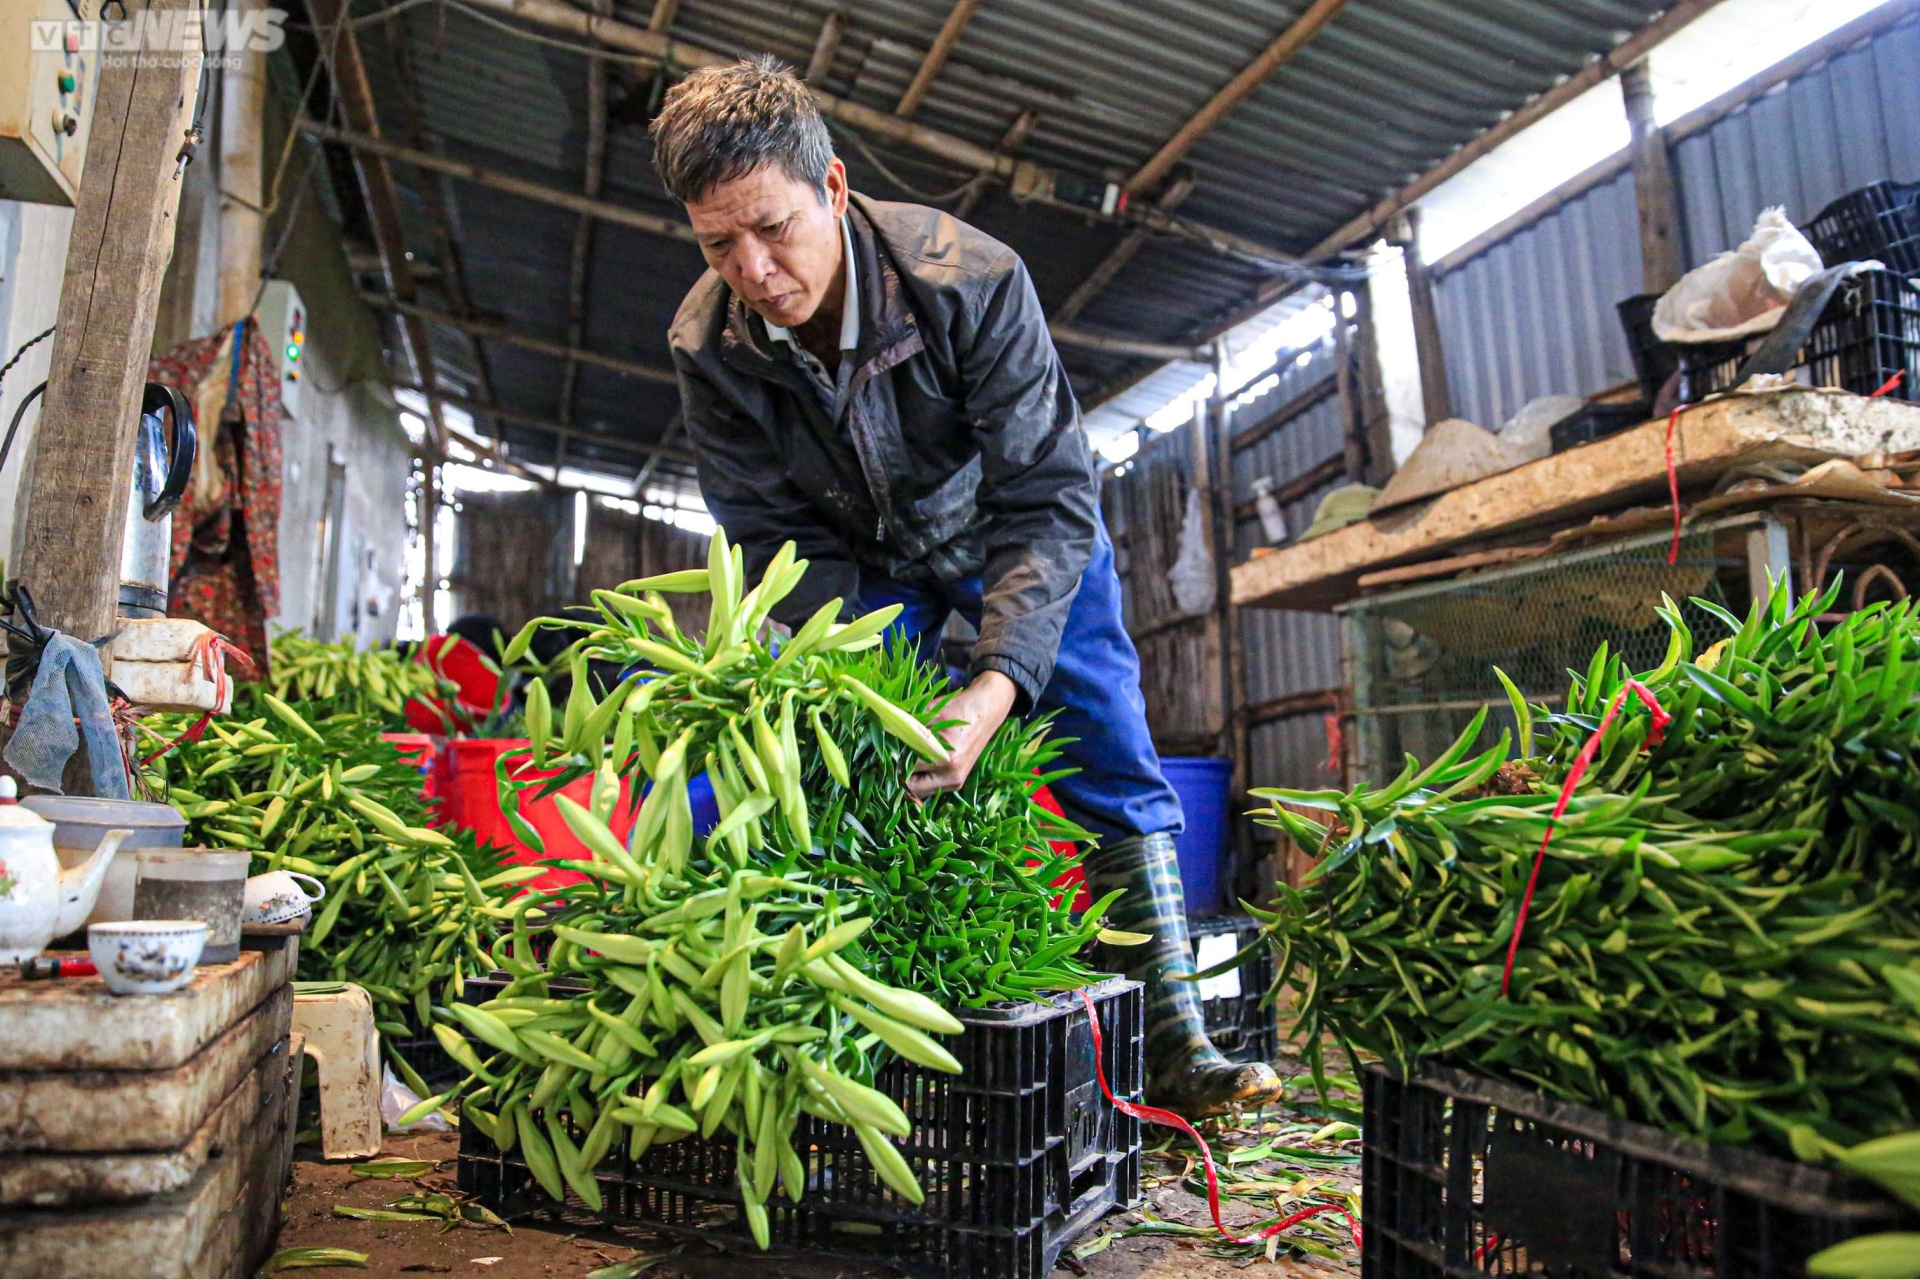 Hoa loa kèn vào vụ, nông dân ngoại thành Hà Nội thu chục triệu đồng mỗi ngày - 11